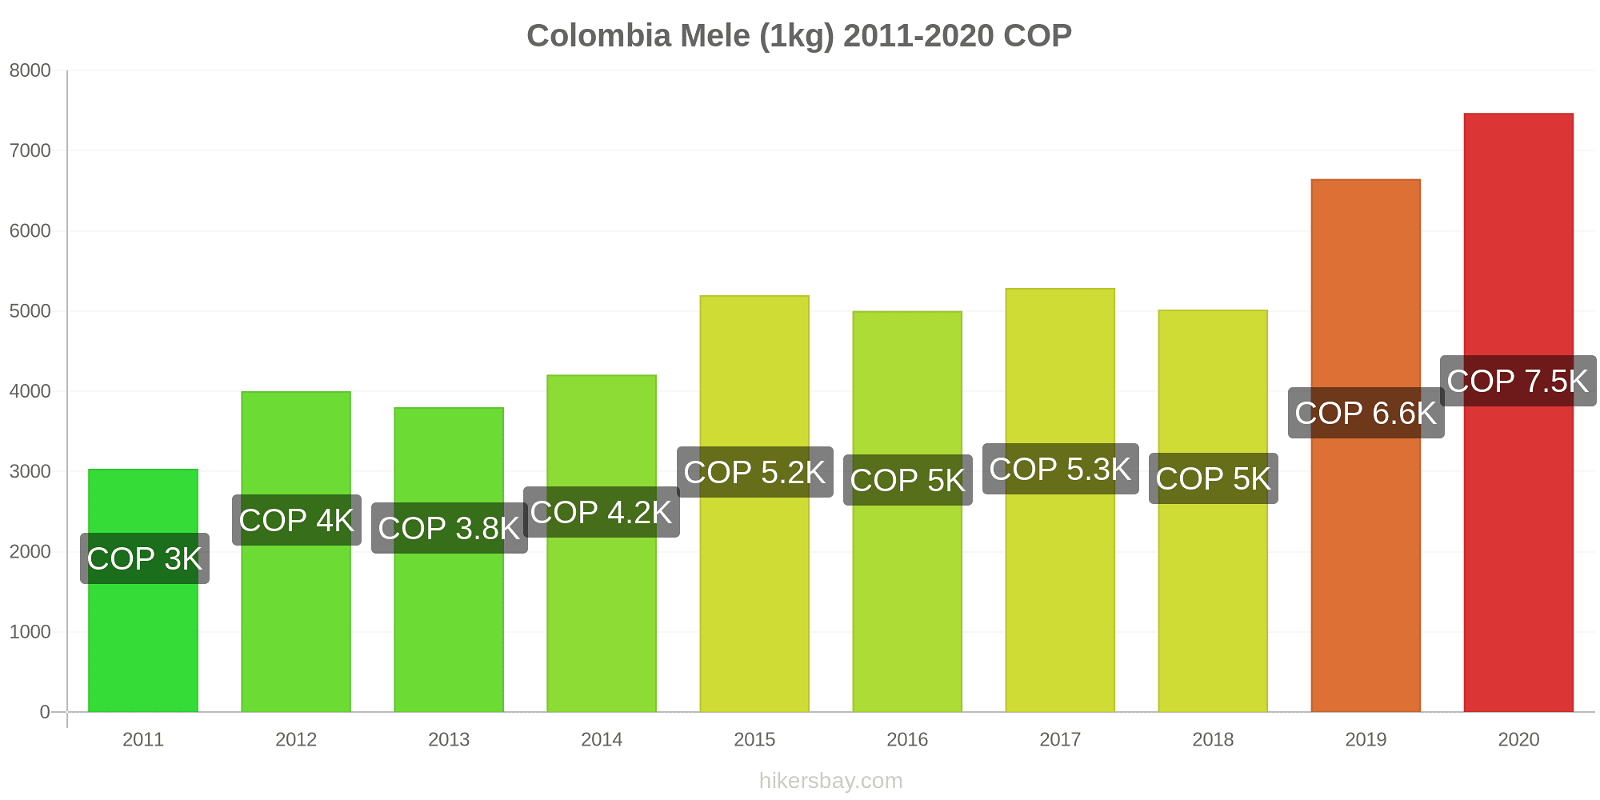 Colombia variazioni di prezzo Mele (1kg) hikersbay.com